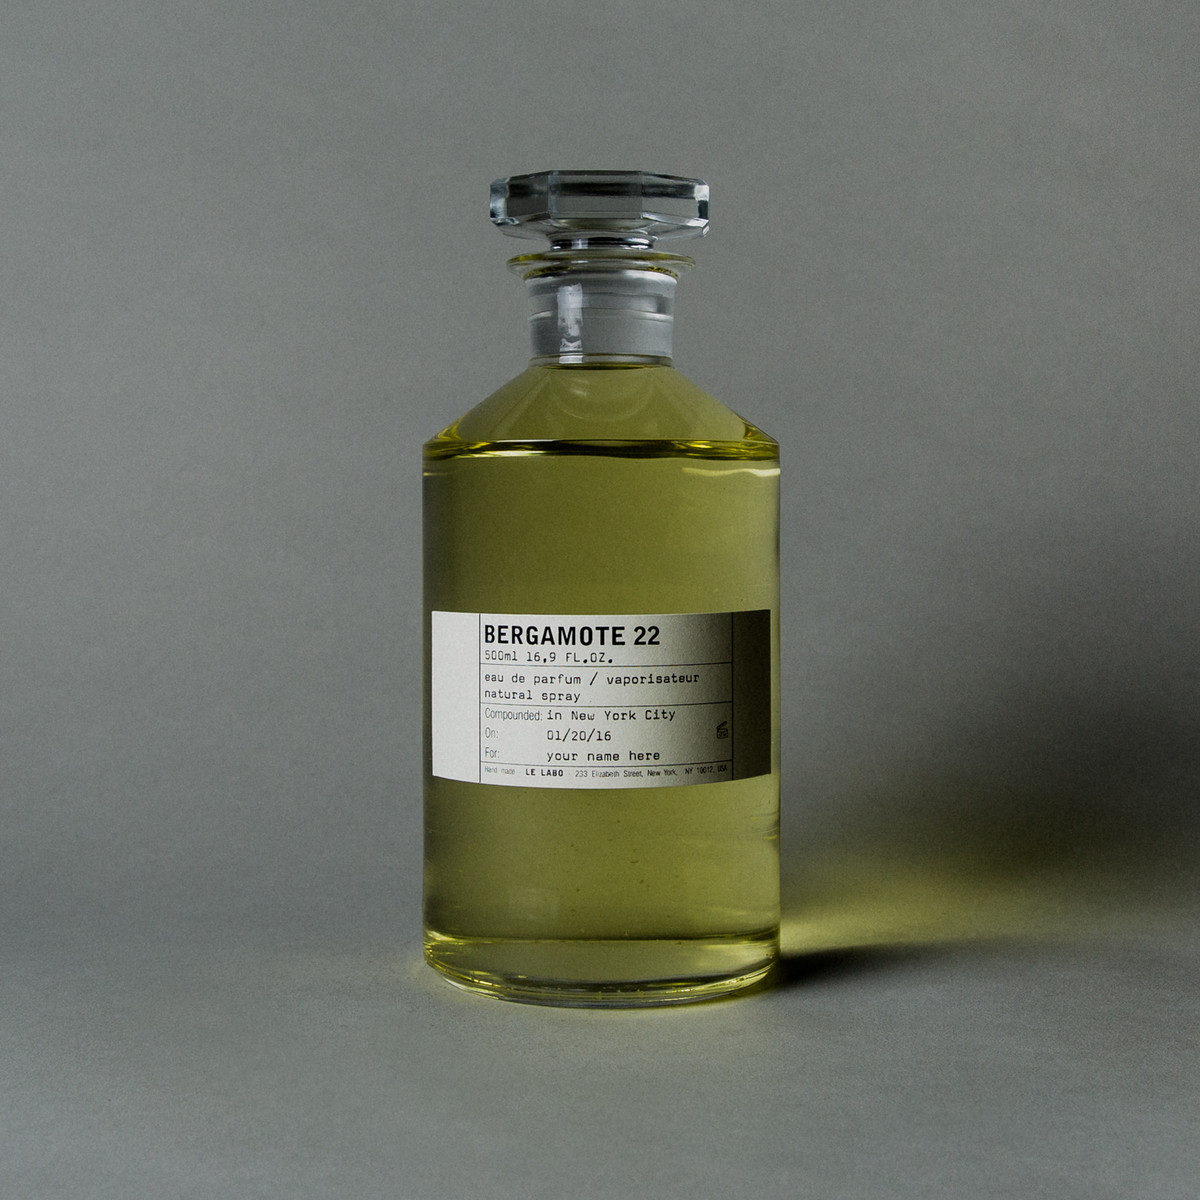 BERGAMOTE 22 | Le Labo Fragrances